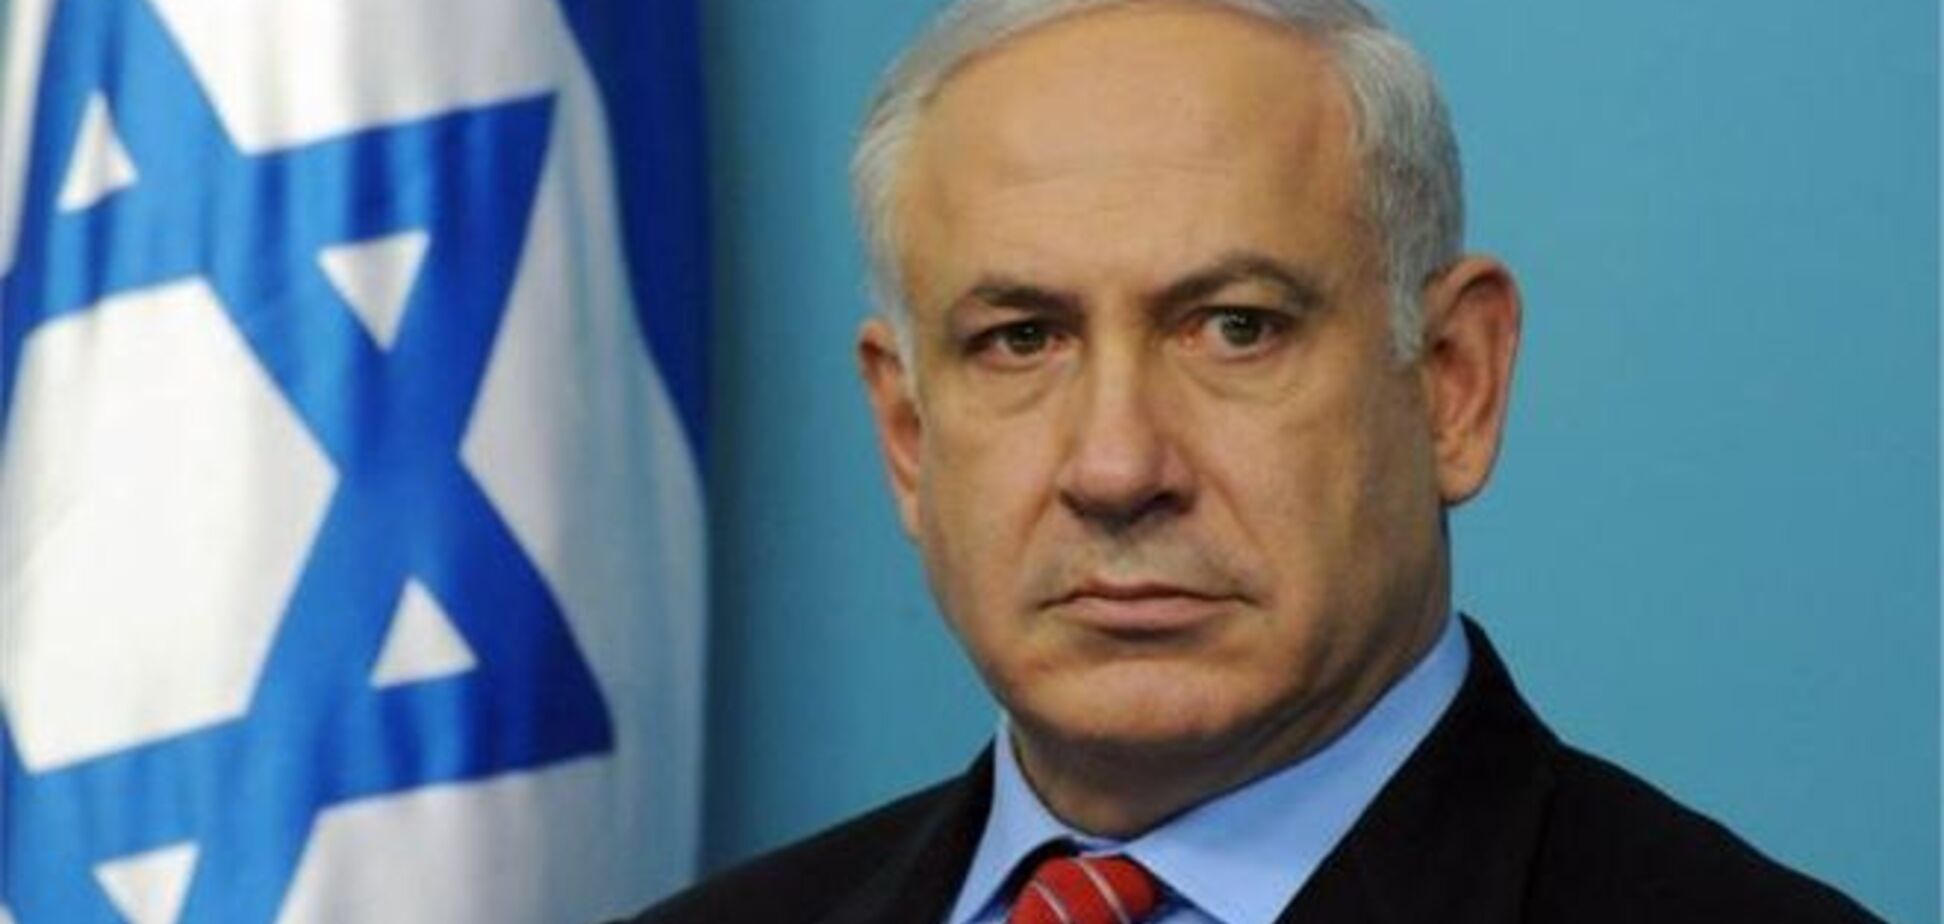 Ізраїль готовий жорстко і швидко відповісти на агресію з боку Сирії